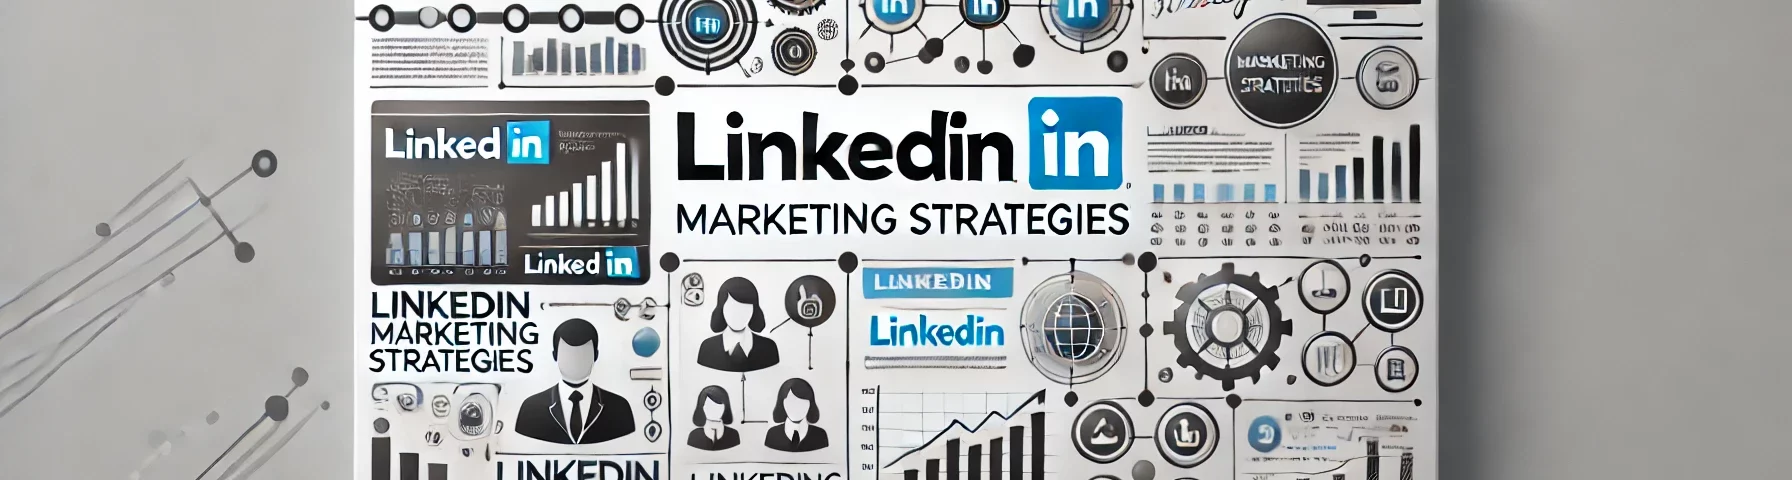 linkedin marketing strategies